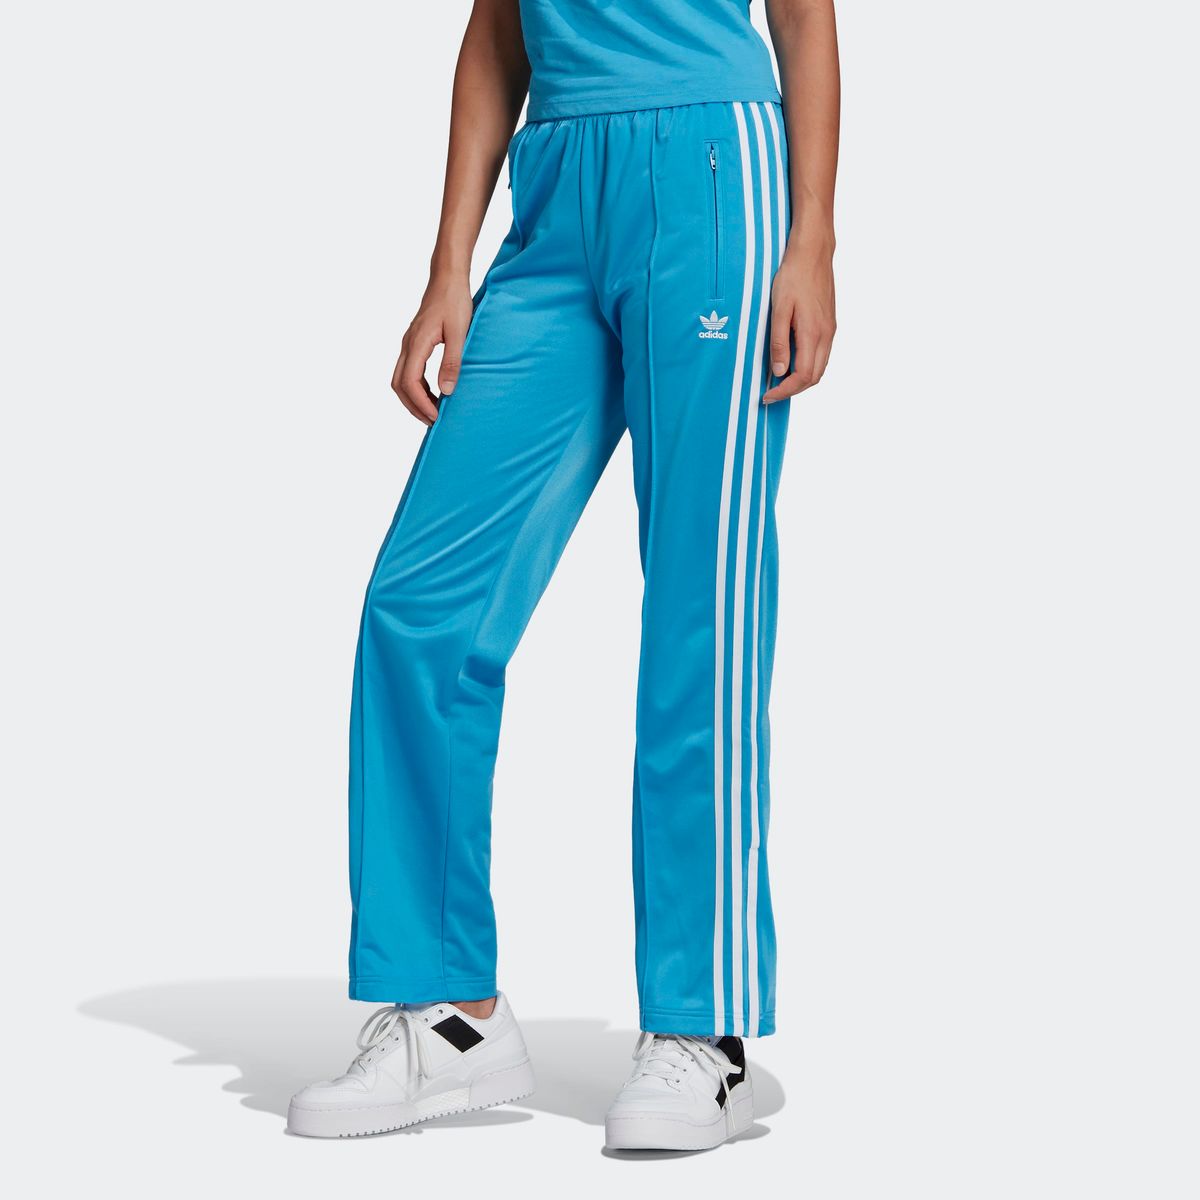 ESS S TAP BLU Pantalon adidas en coloris Bleu Femme Vêtements homme Articles de sport et dentraînement homme Survêtements 